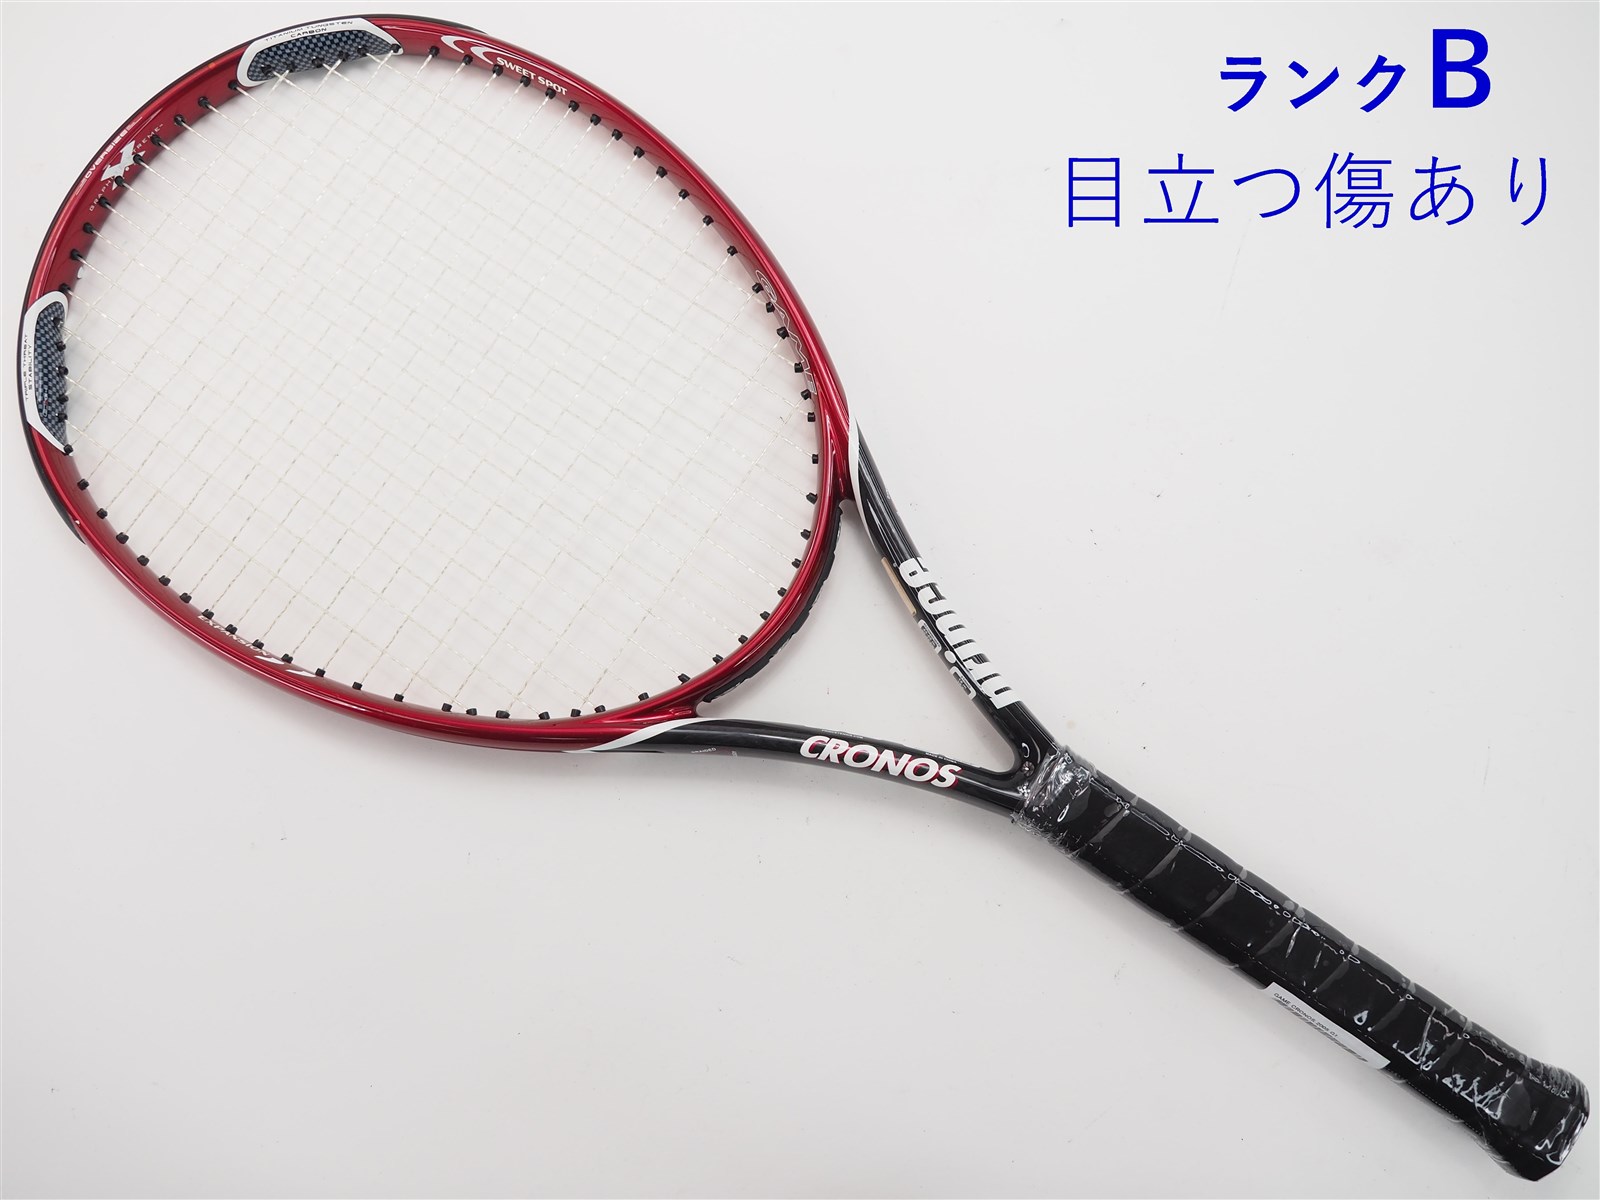 【中古】プリンス ゲーム クロノス 2005年モデルPRINCE GAME CRONOS 2005(G1)【中古 テニスラケット】